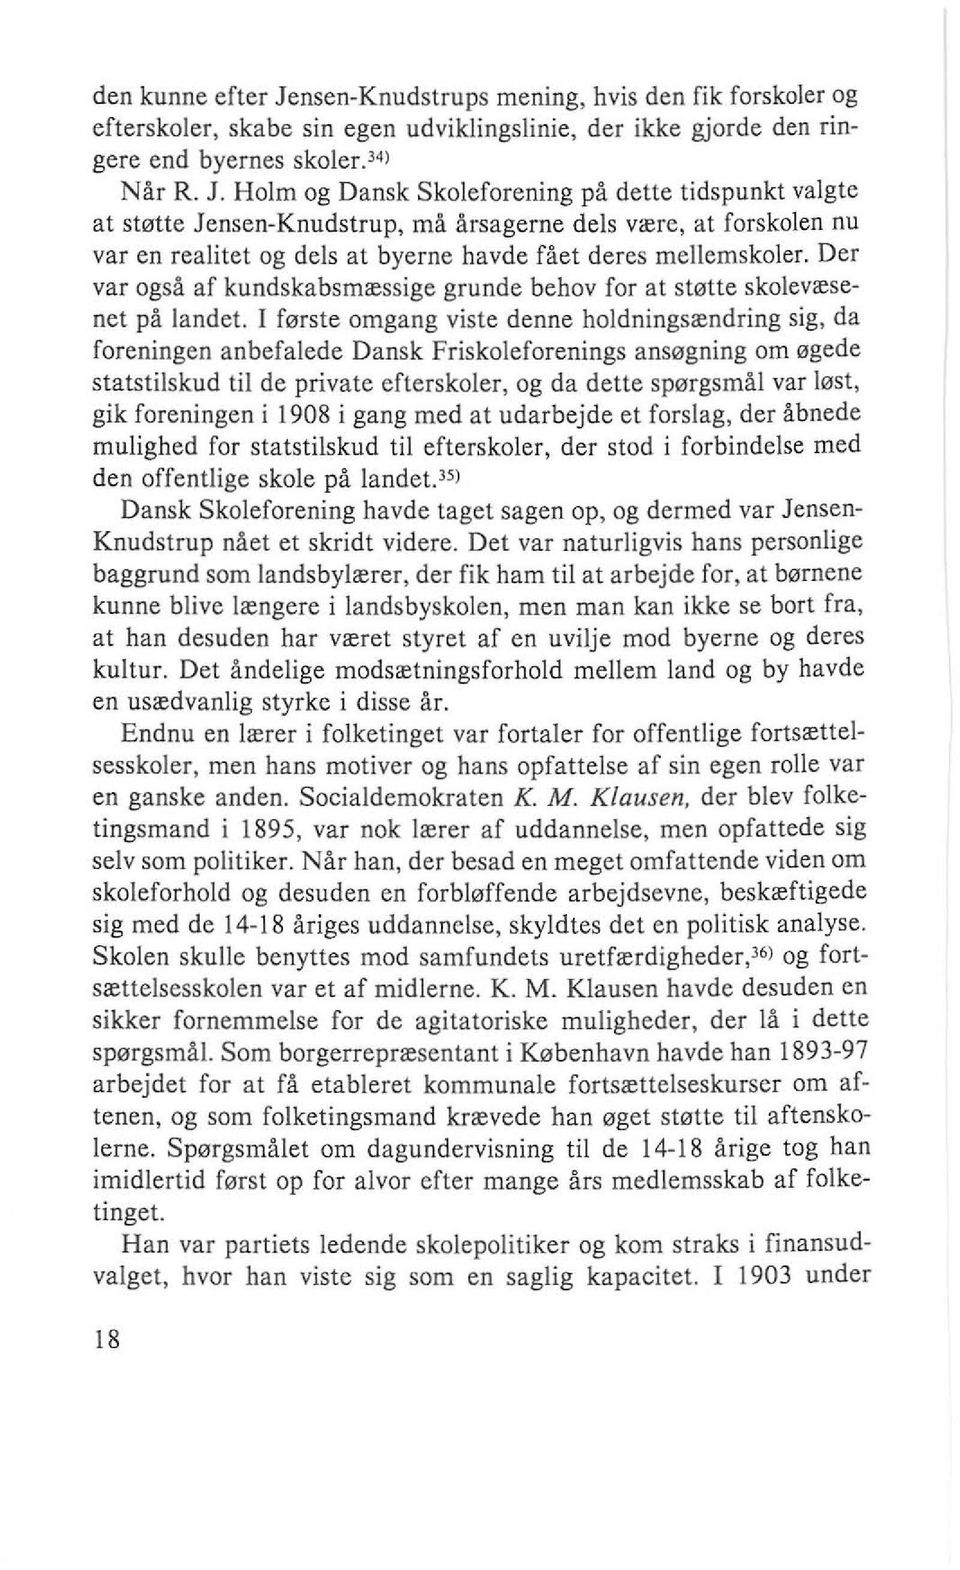 Holm og Dansk Skoleforening på dette tidspunkt valgte at støtte Jensen-Knudstrup, må årsagerne dels være, at forskolen nu var en realitet og dels at byerne havde fået deres mellemskoler.